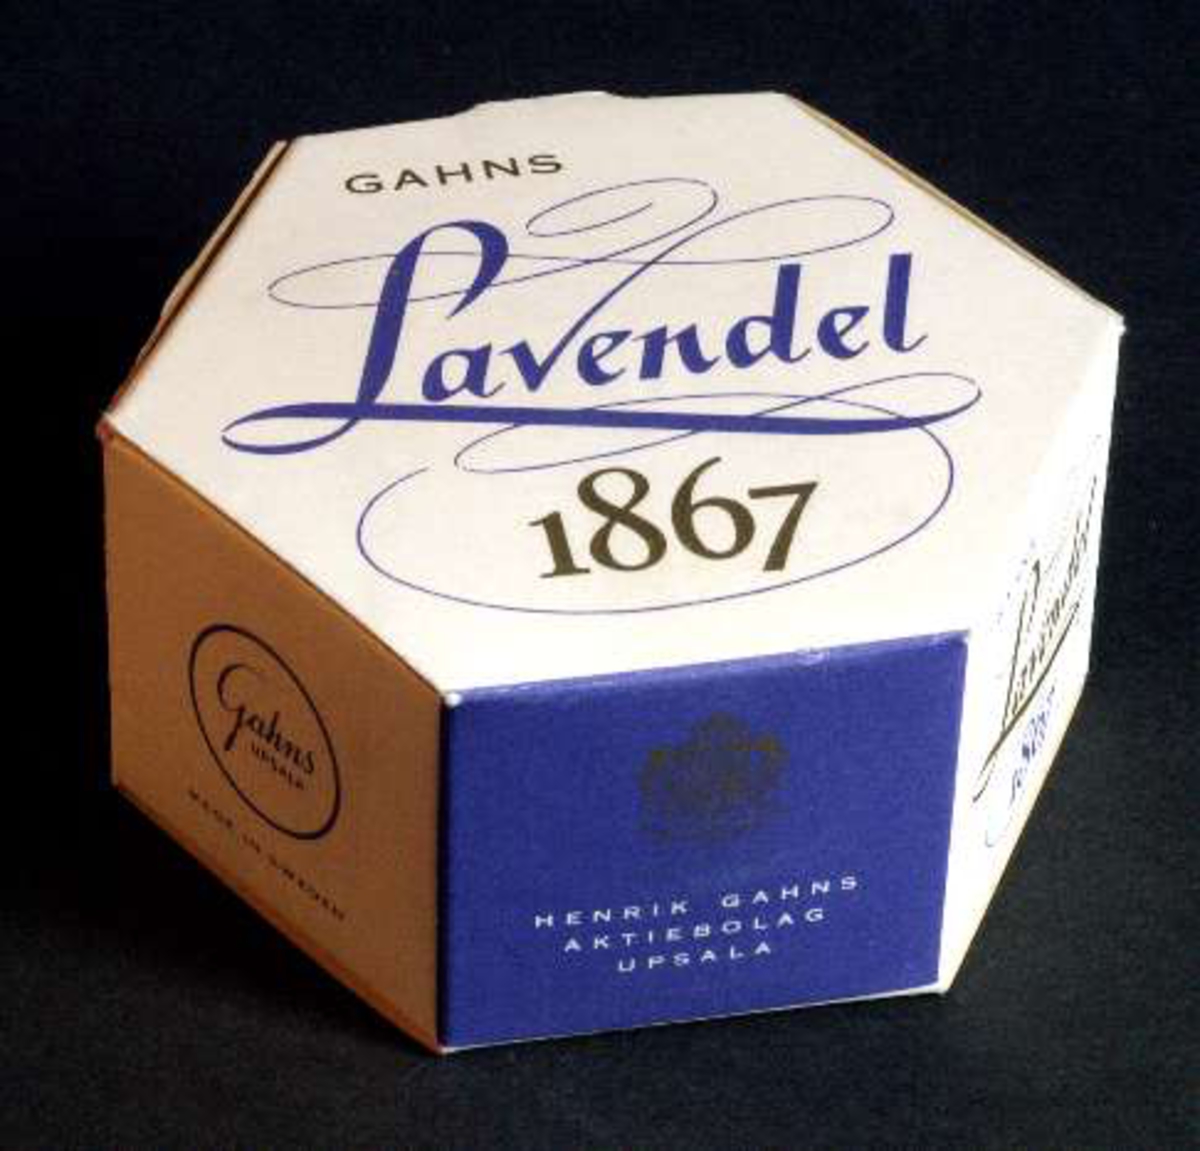 Förpackning med tvål, vit med text i lila och guld "Gahns Lavendel 1867. Henrik Gahns Aktiebolag Uppsala". Innehåller en gulvit rund tvål.